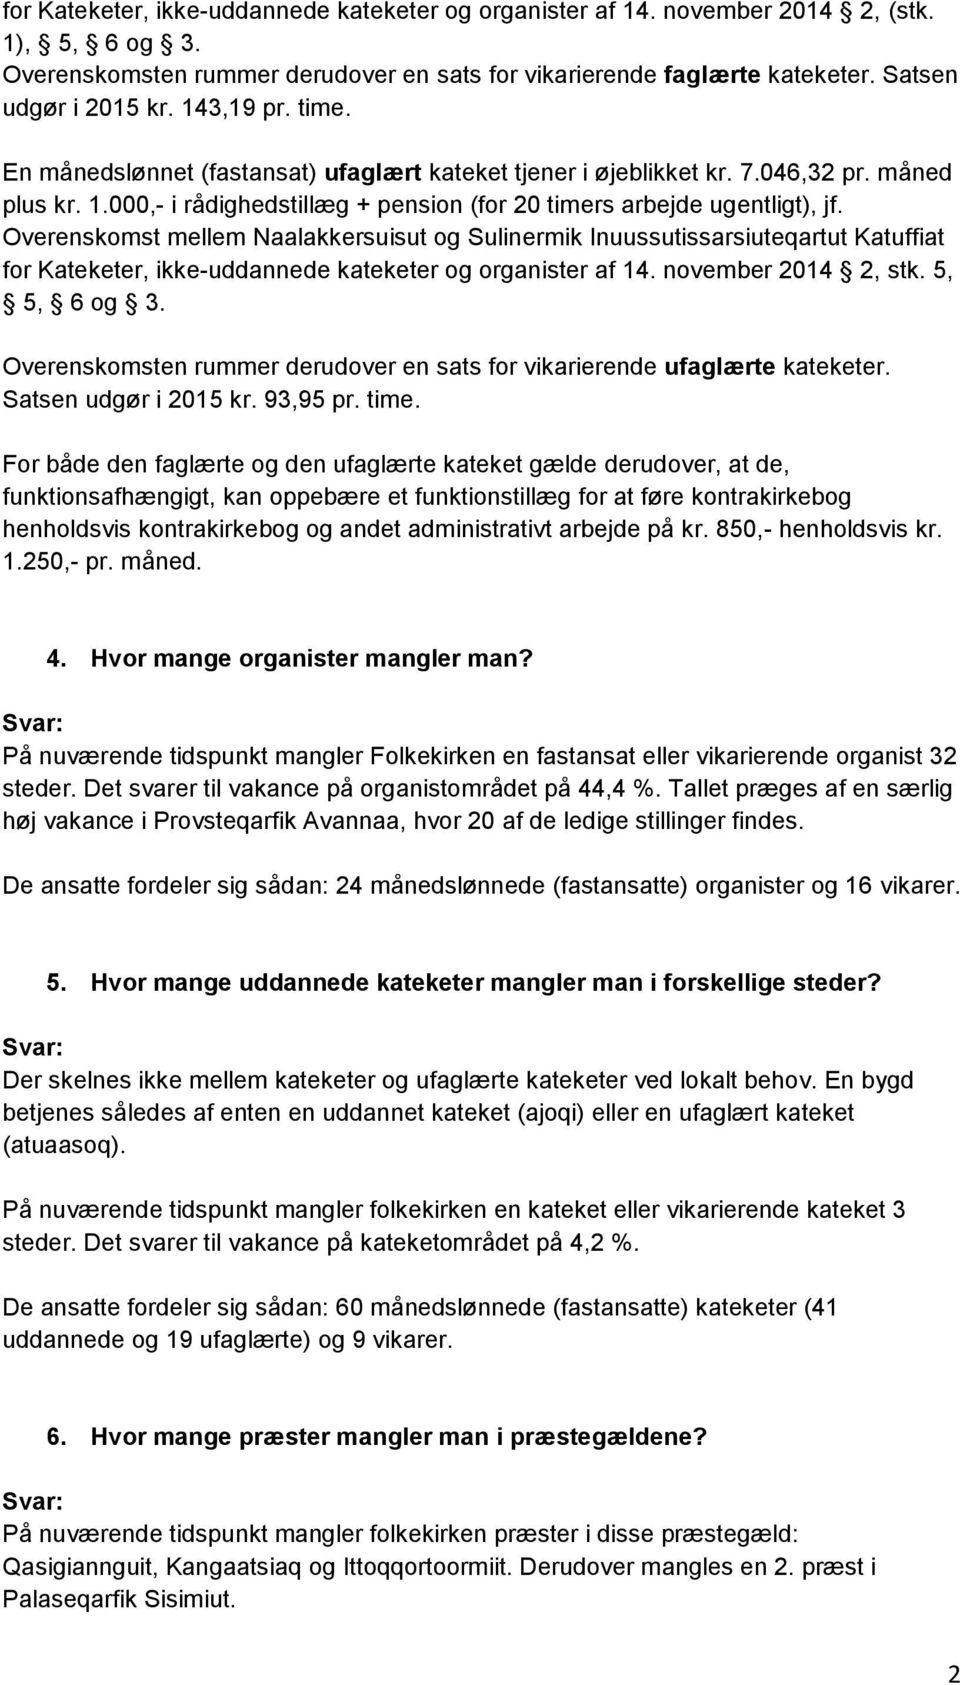 Overenskomst mellem Naalakkersuisut og Sulinermik Inuussutissarsiuteqartut Katuffiat for Kateketer, ikke-uddannede kateketer og organister af 14. november 2014 2, stk. 5, 5, 6 og 3.